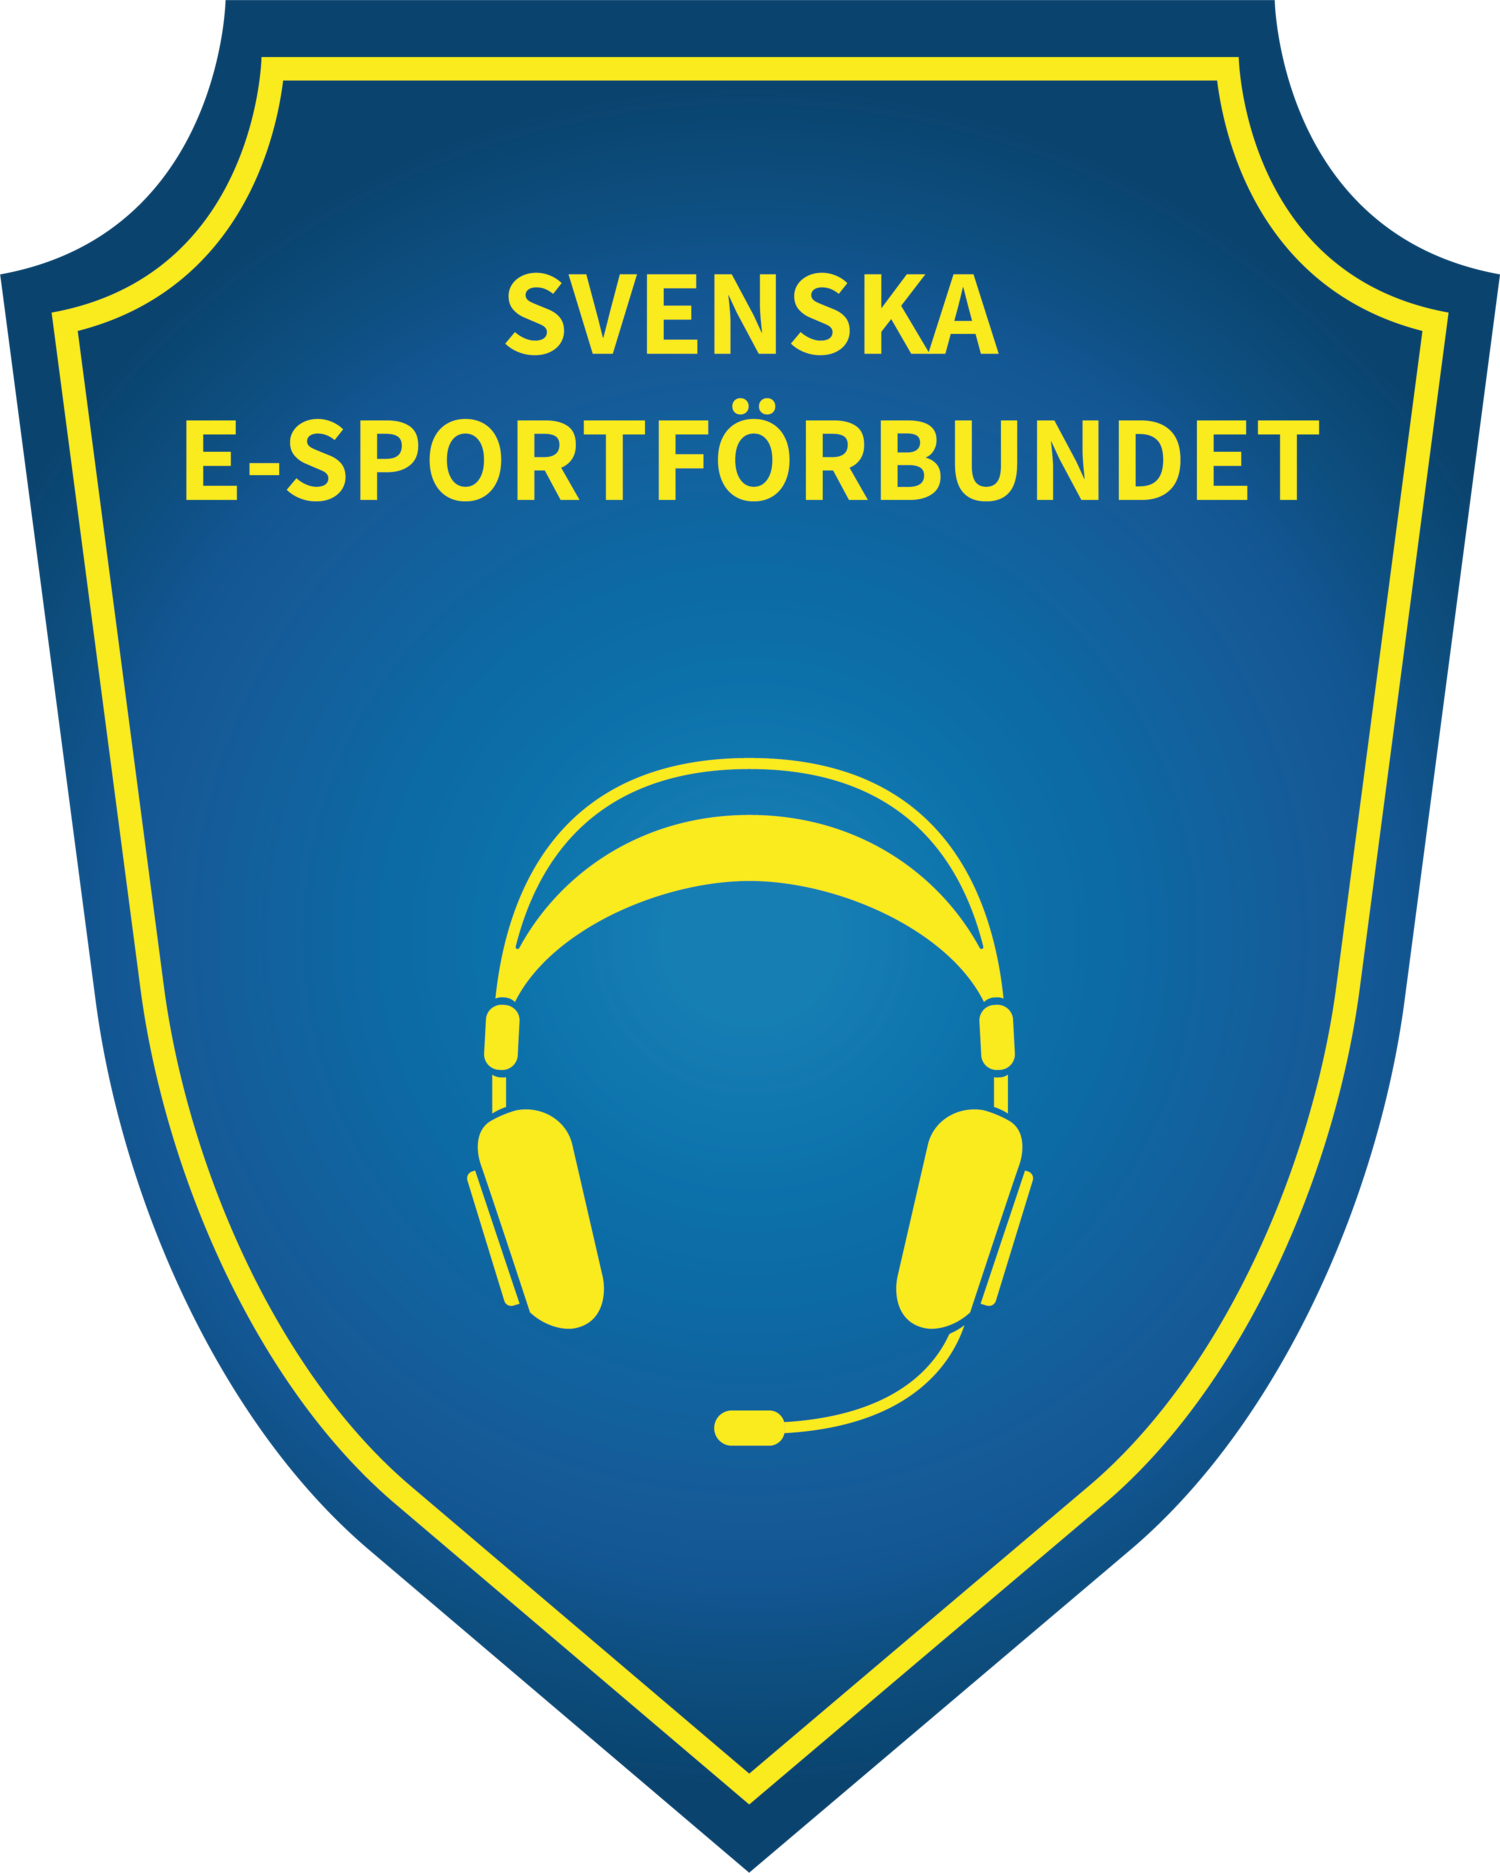 Svenska e-sportförbundet